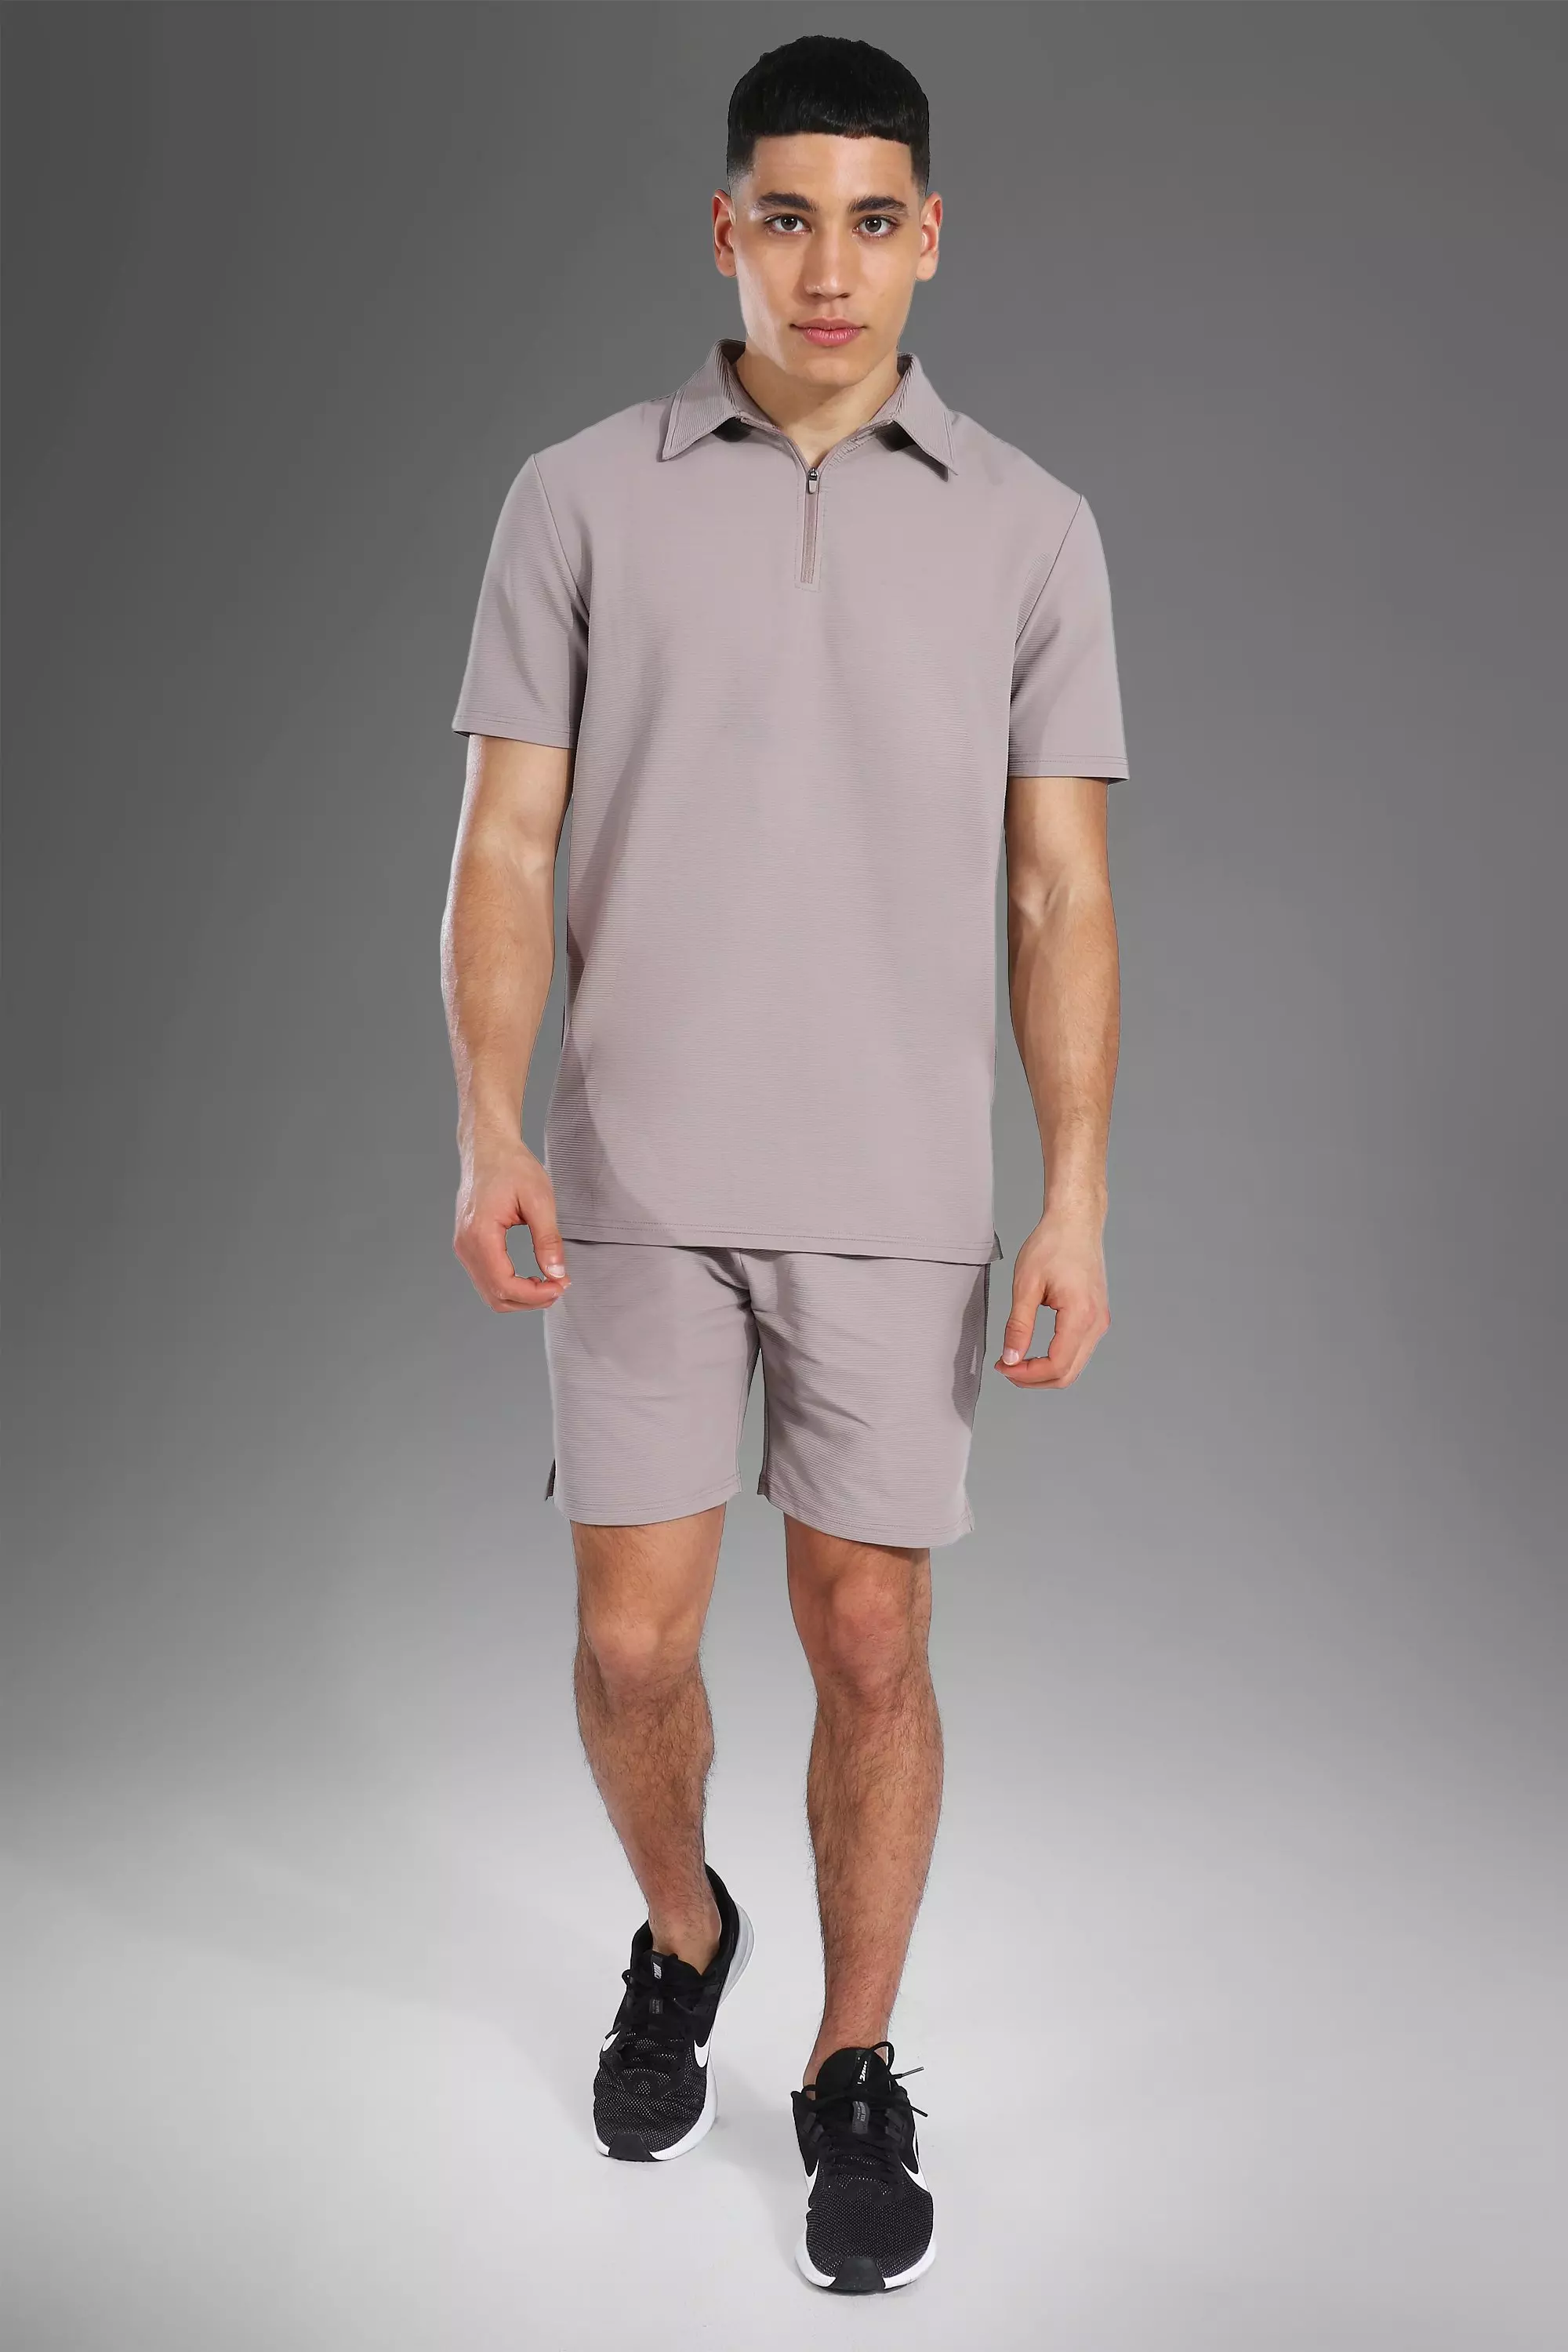 Ribbed Polo Shirt and Shorts Set